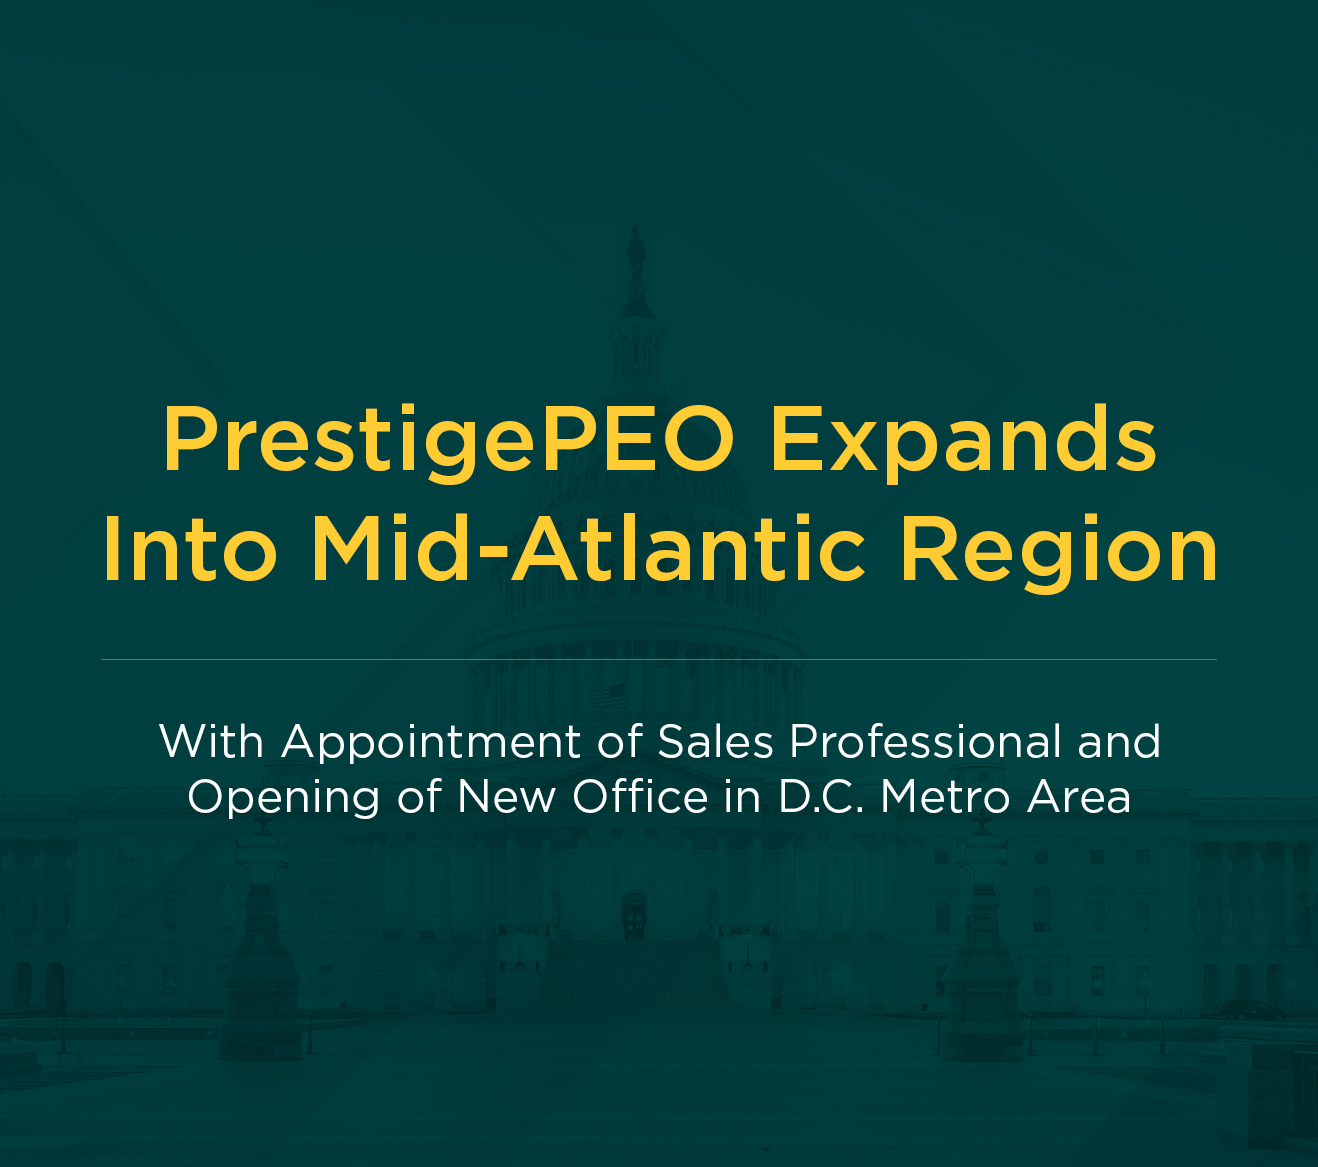 PrestigePEO Expands Into Mid-Atlantic Region